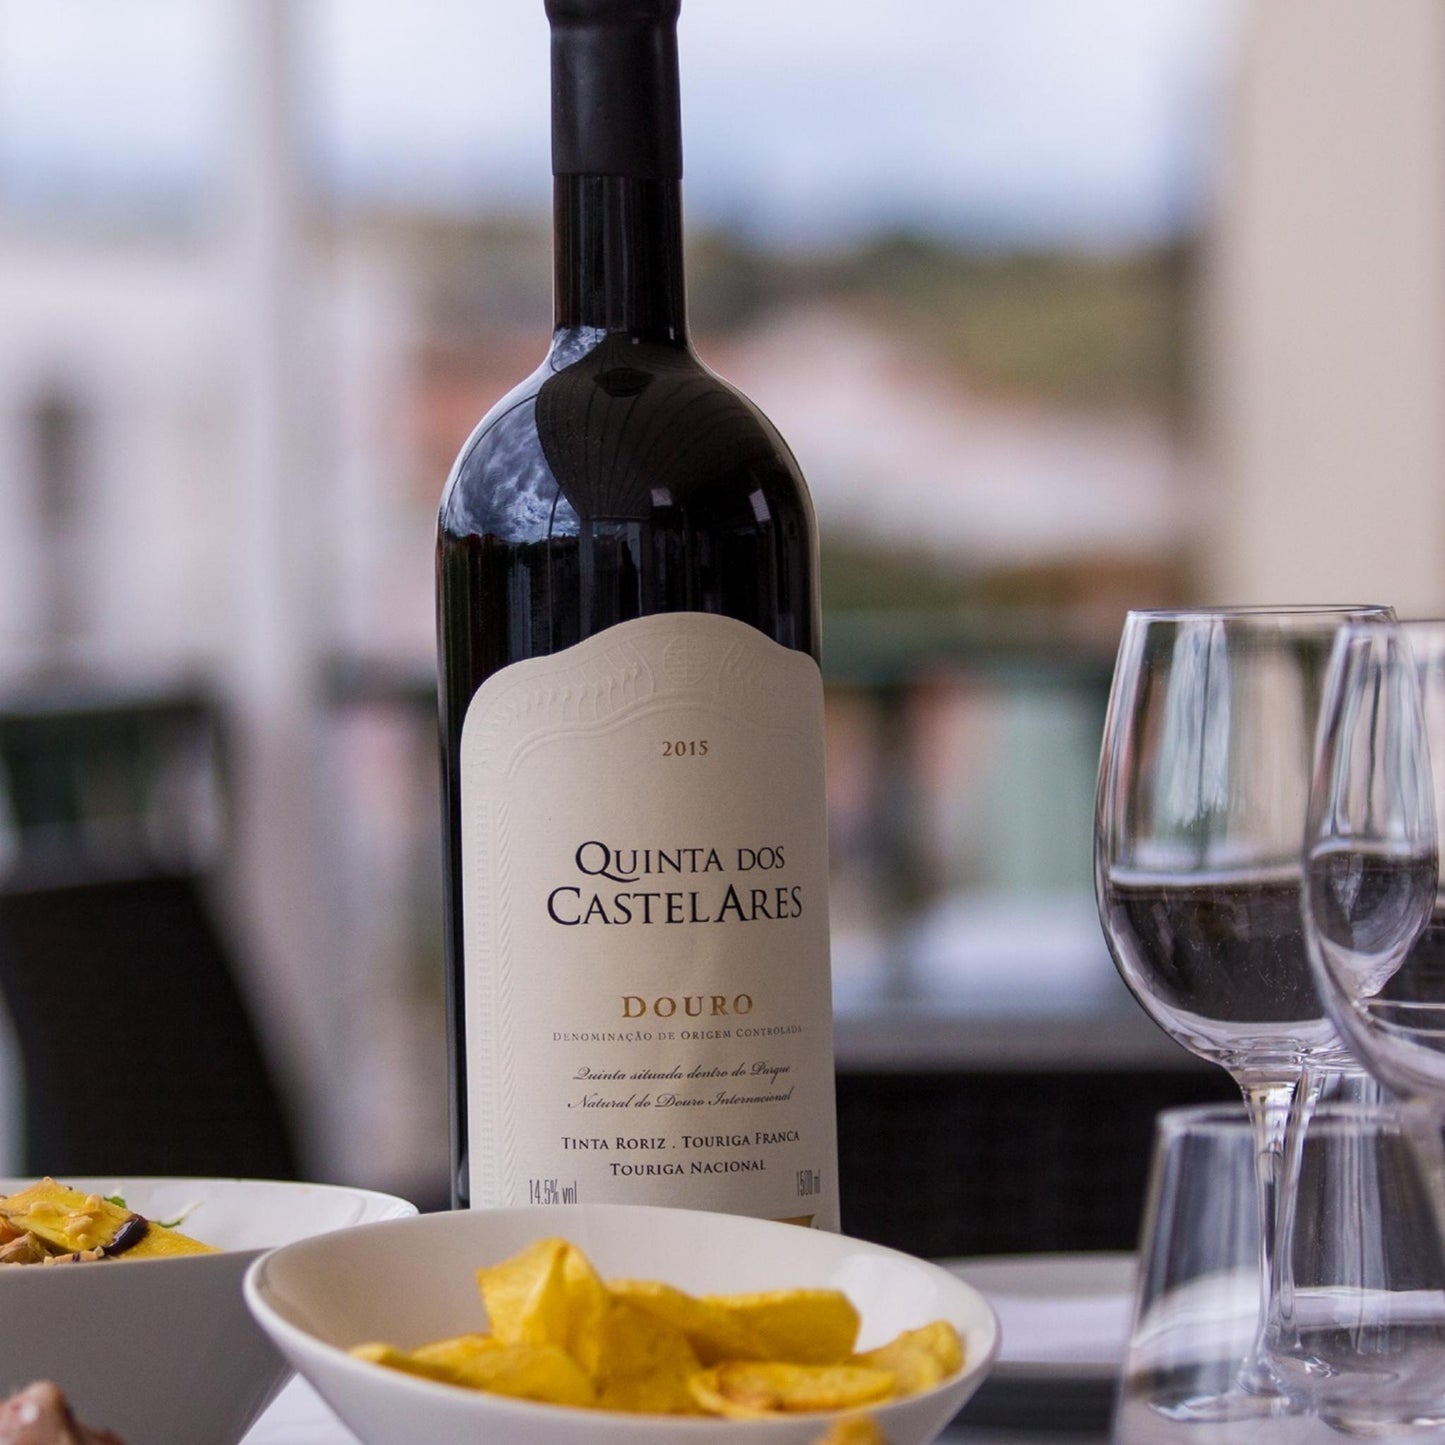 
                  
                    Quinta dos Castelares Reserva, Rotwein aus dem Douro / Portugal. Bild mit Rotweinflasche, leeren Gläsern und Knabbereien auf einem Tisch.
                  
                